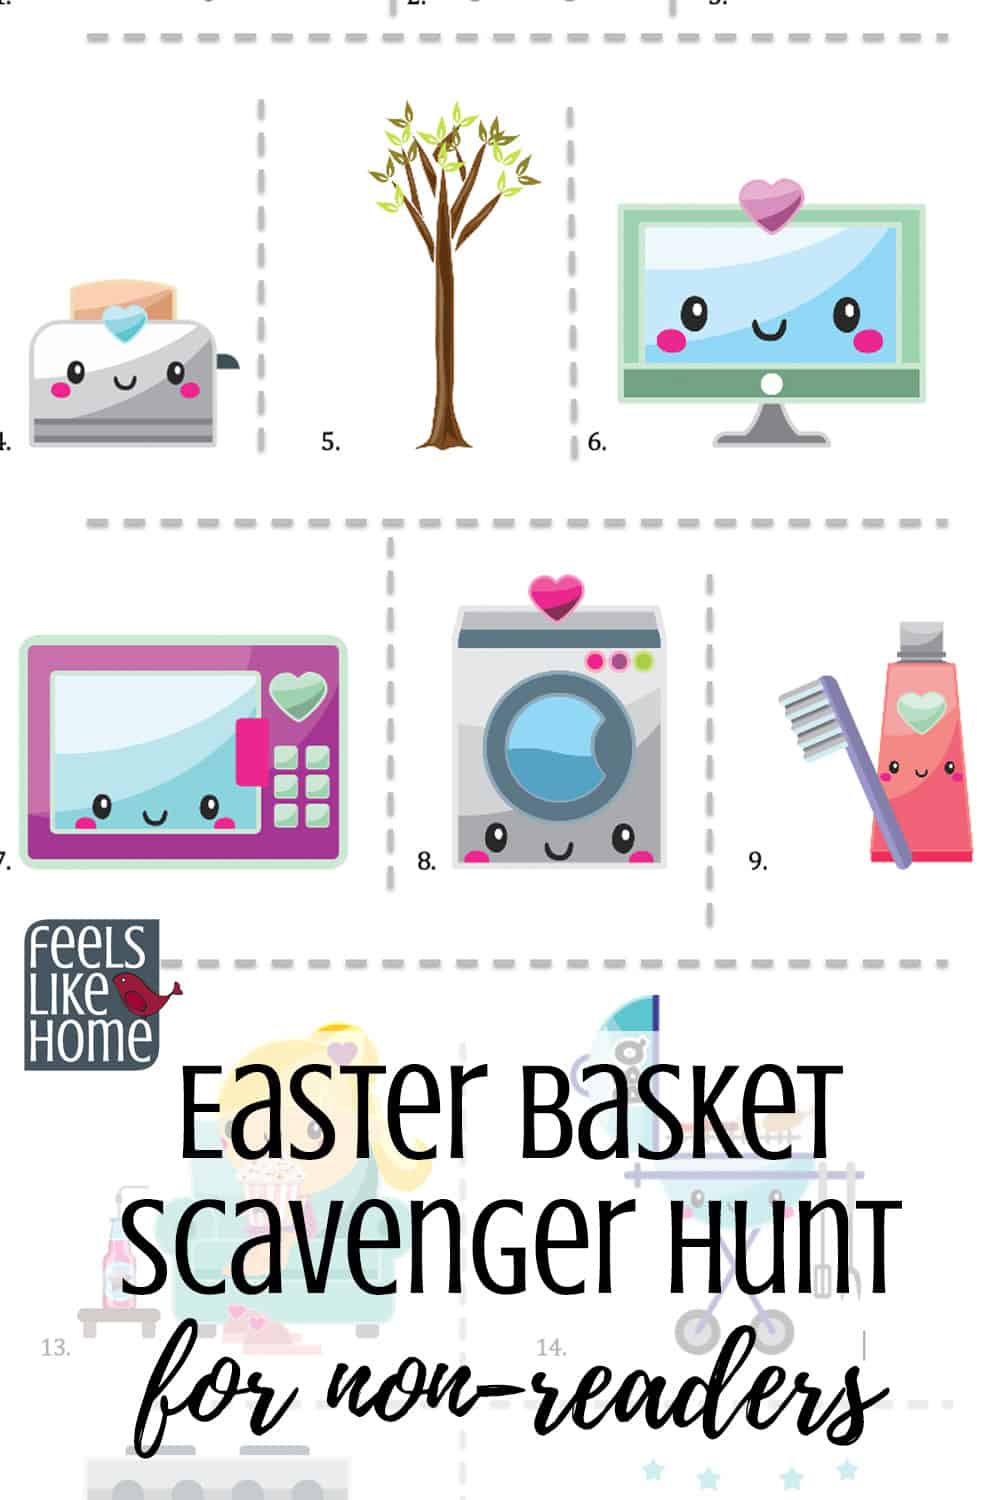 Easy Easter Basket Scavenger Hunt for Non-Readers (Not Religious)